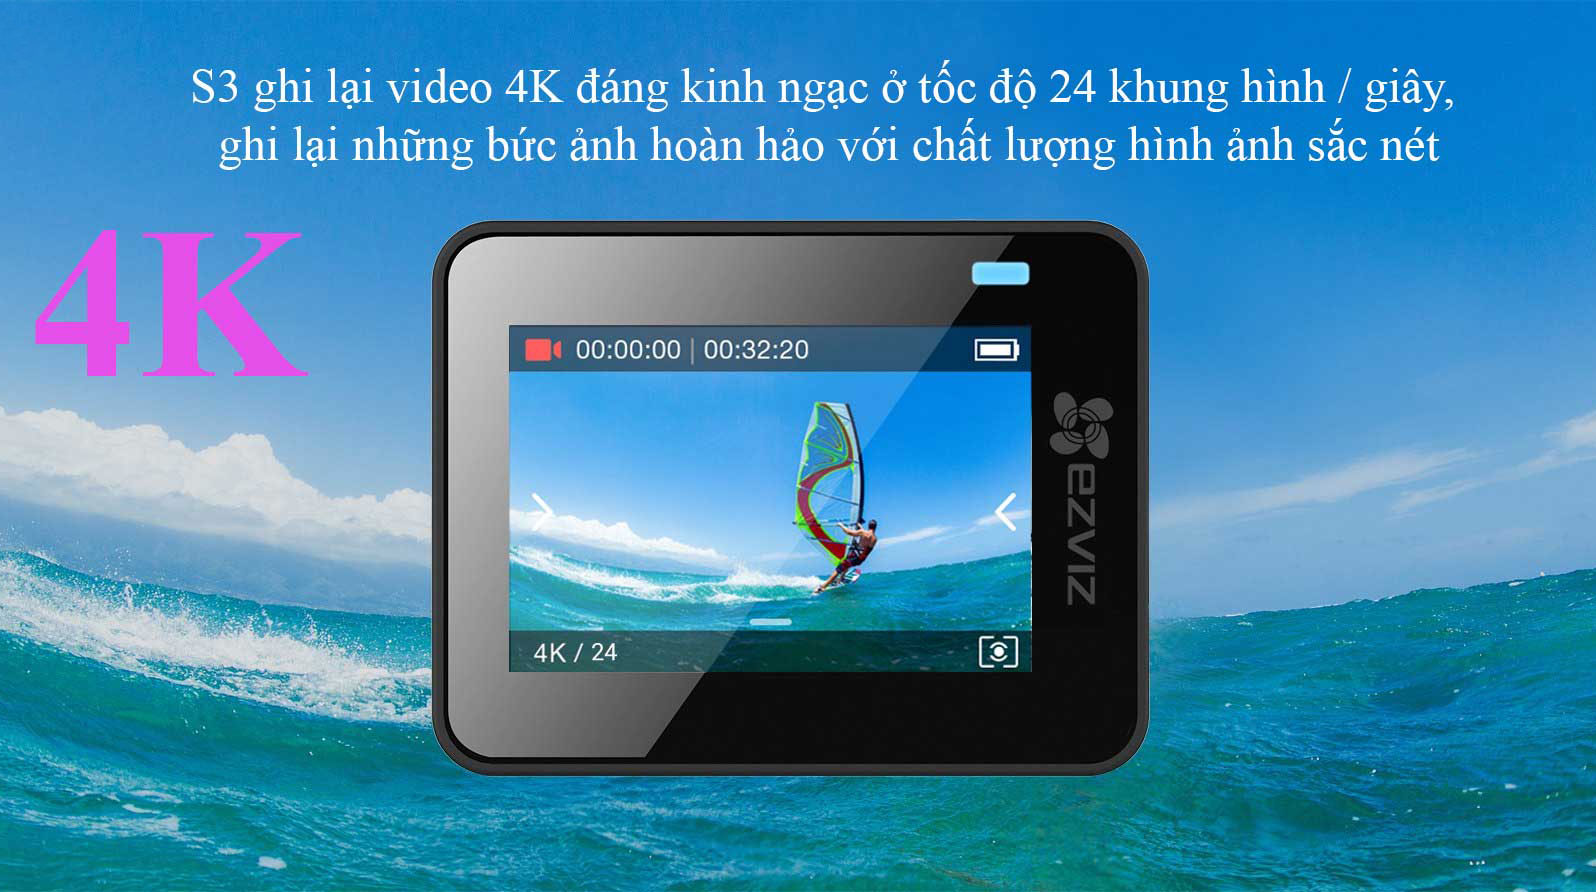 camera hành trình EZVIZ S3 ghi lại video 4k